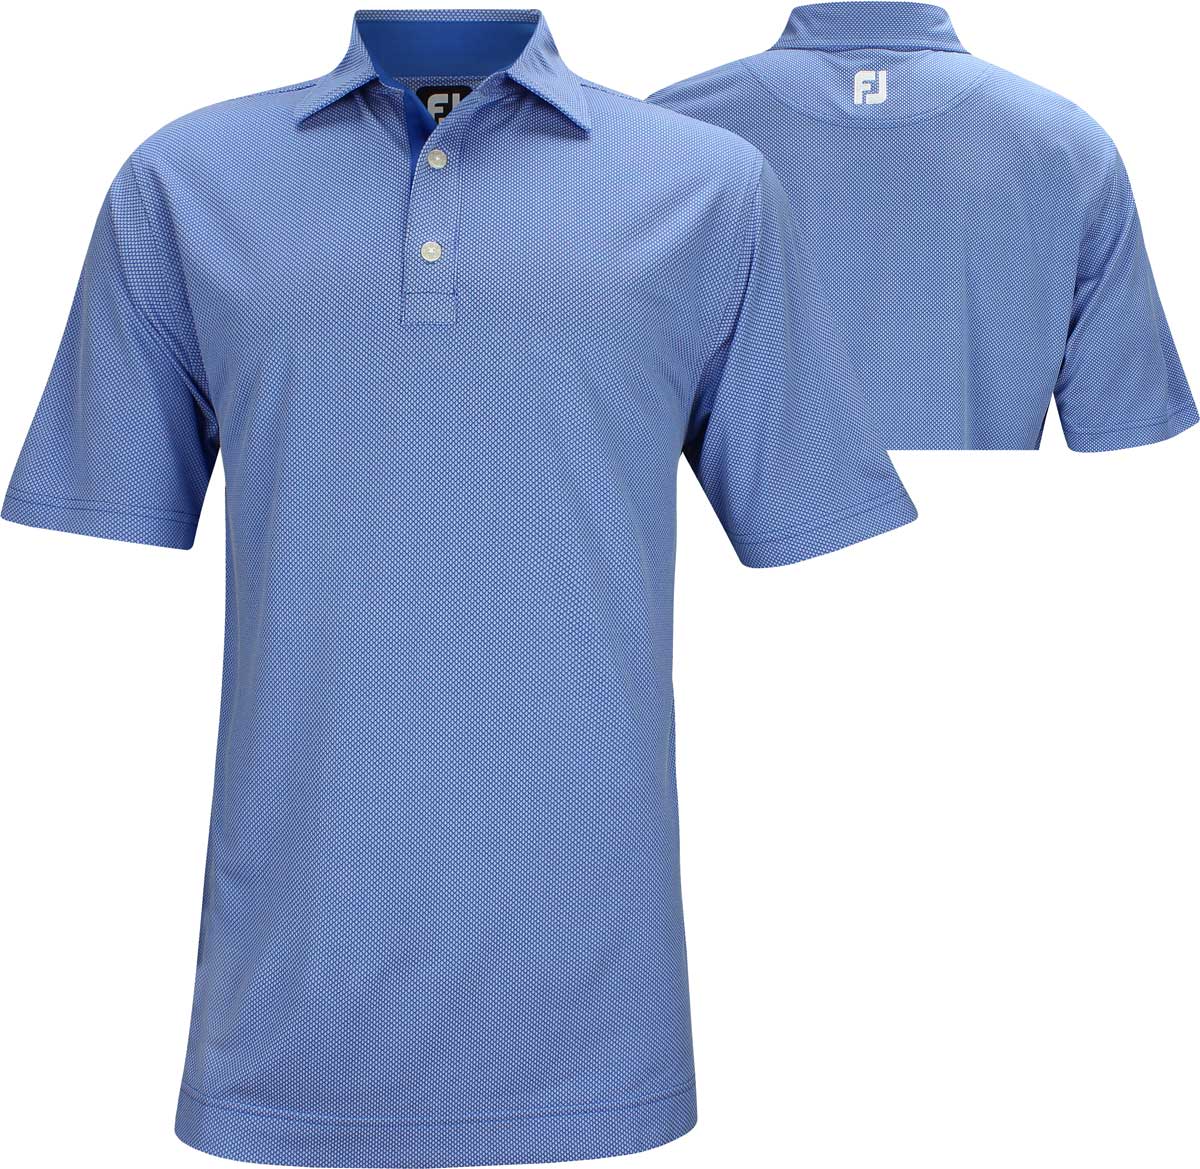 golf channel footjoy shirts